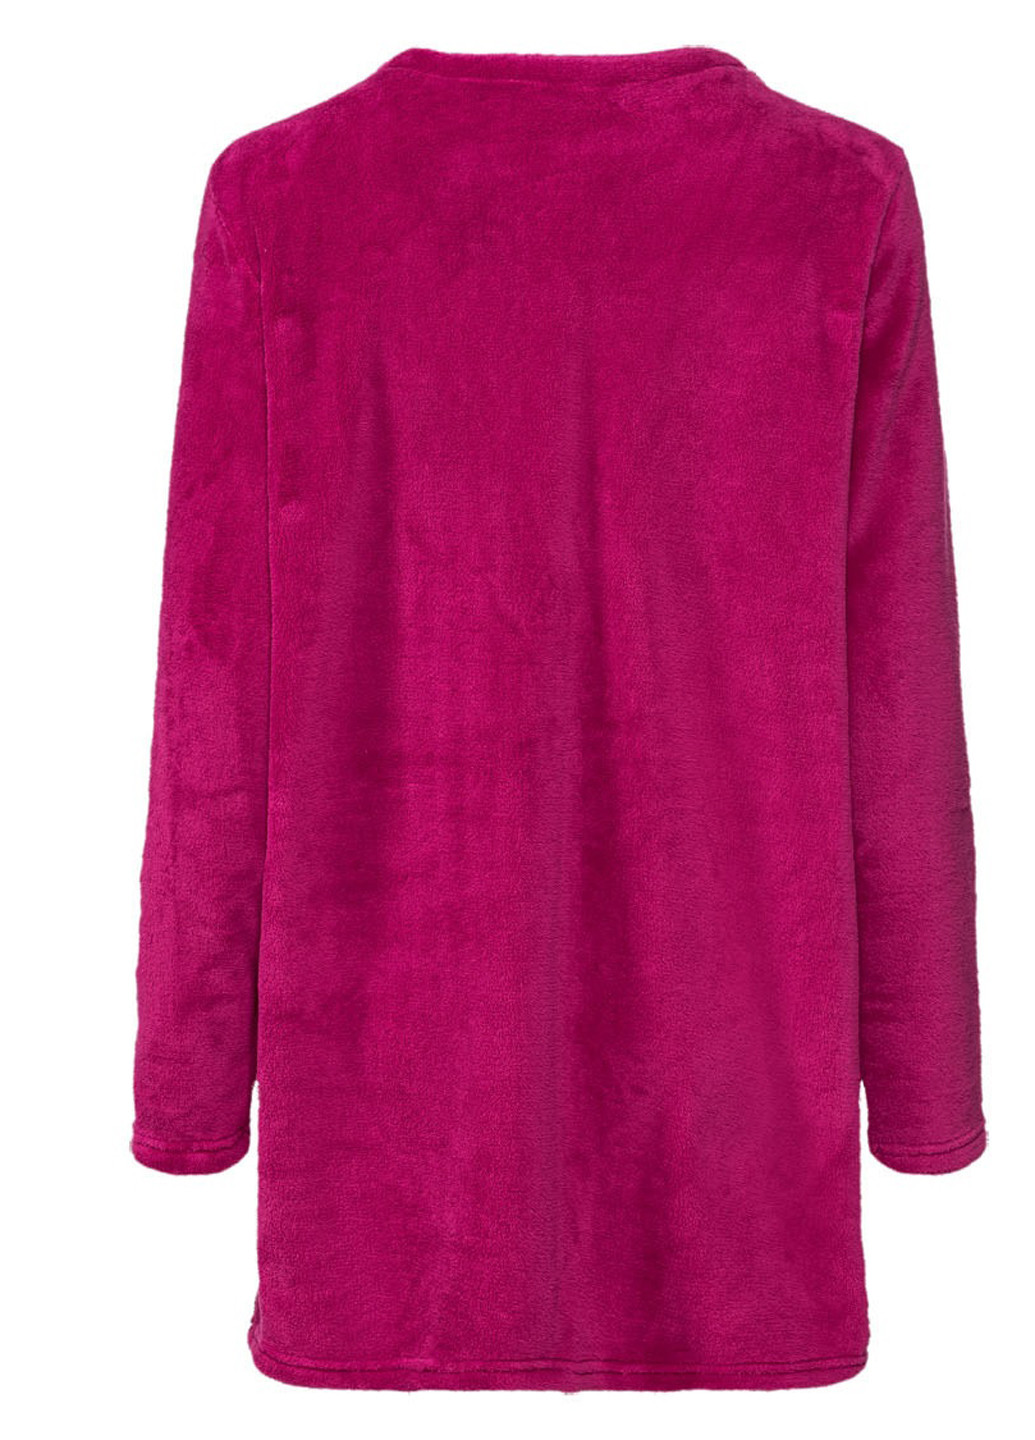 Фуксиновое (цвета Фуксия) домашнее платье Esmara однотонное